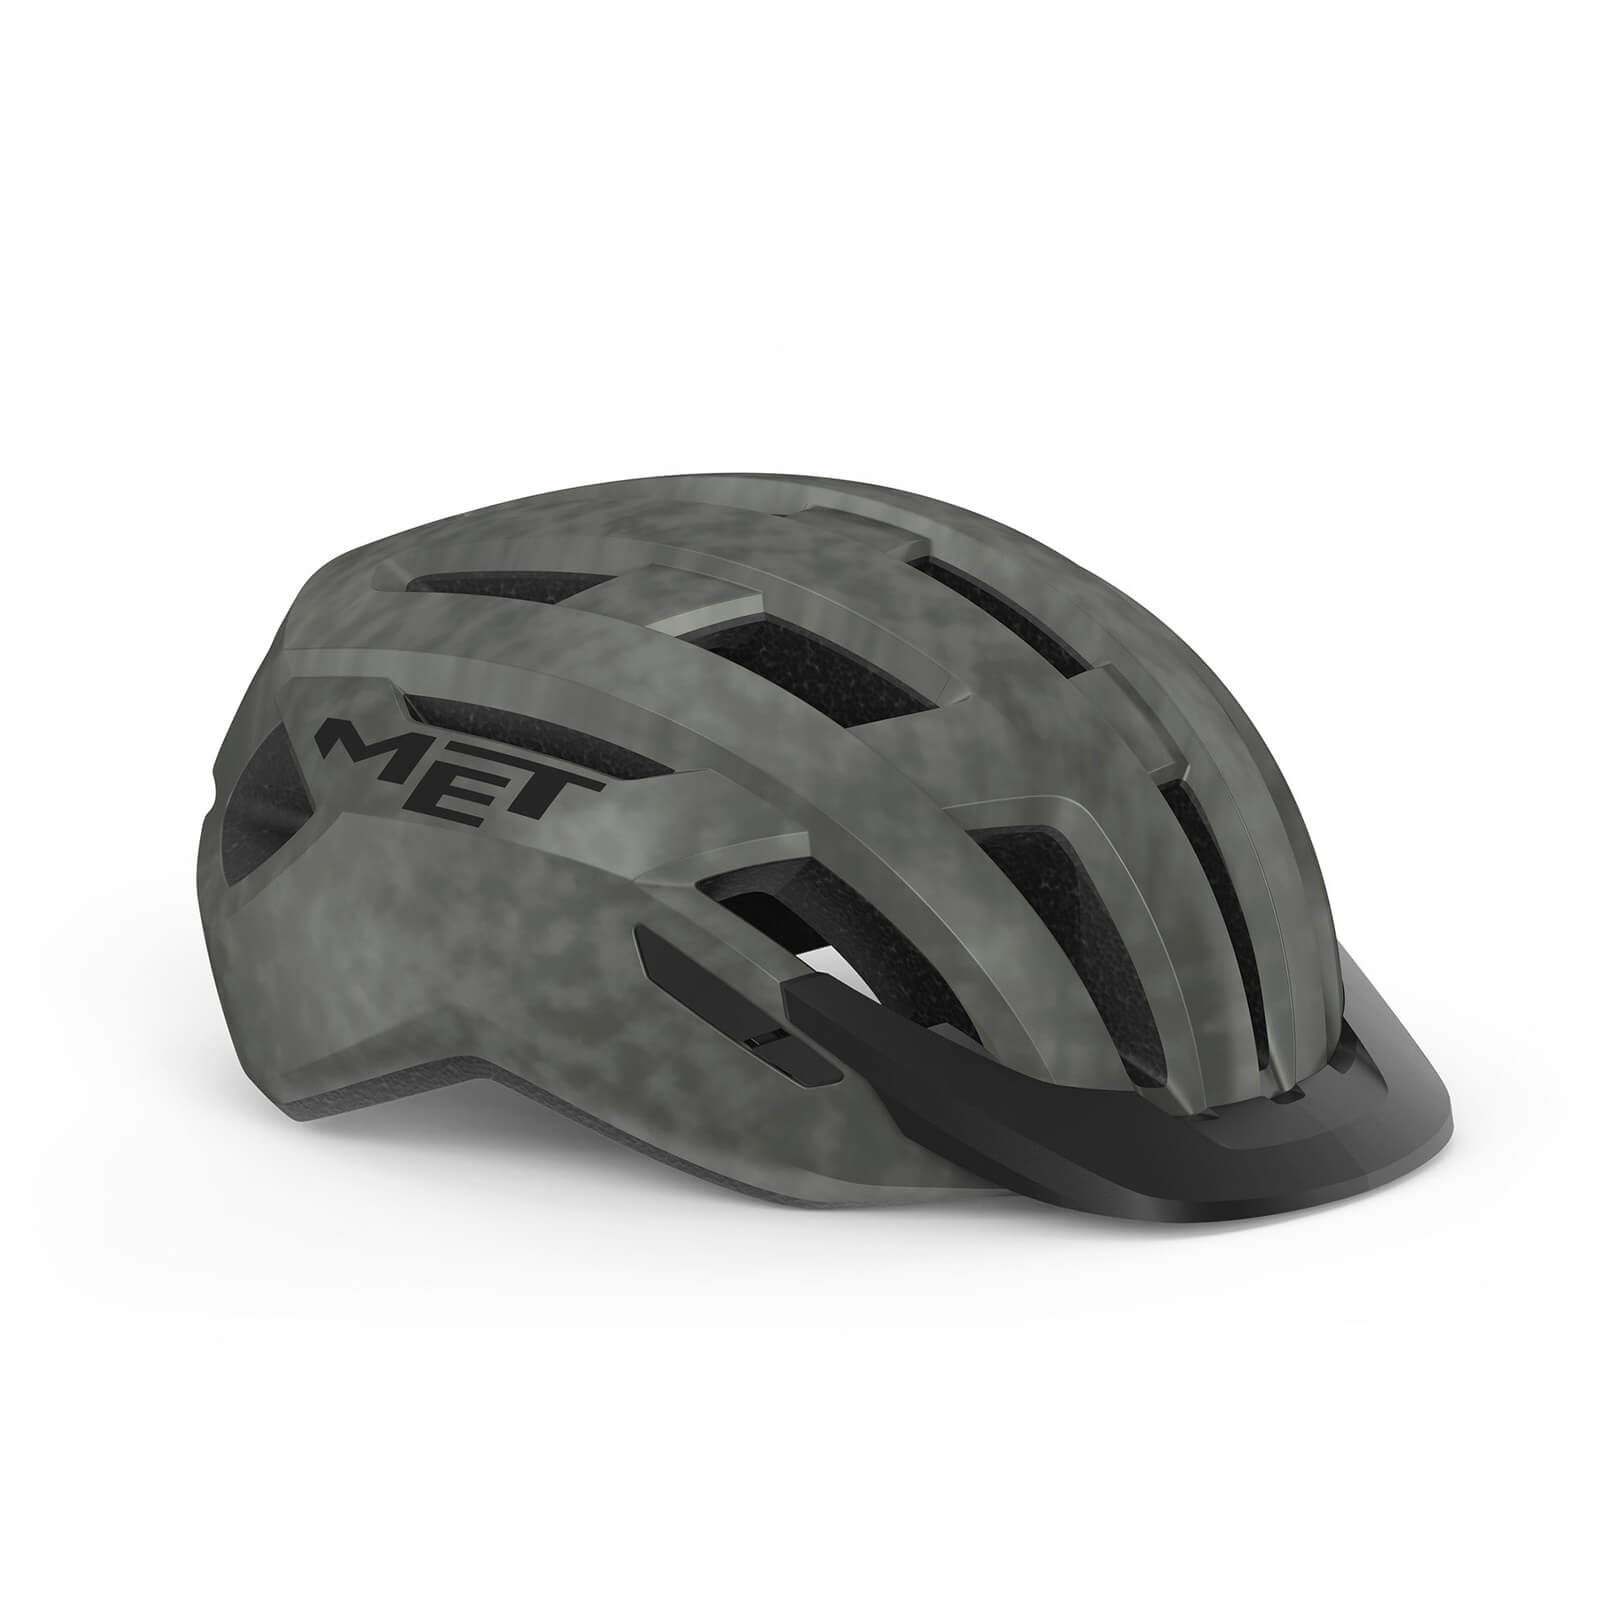 MET AllRoad MIPS Helmet - S - Titanium